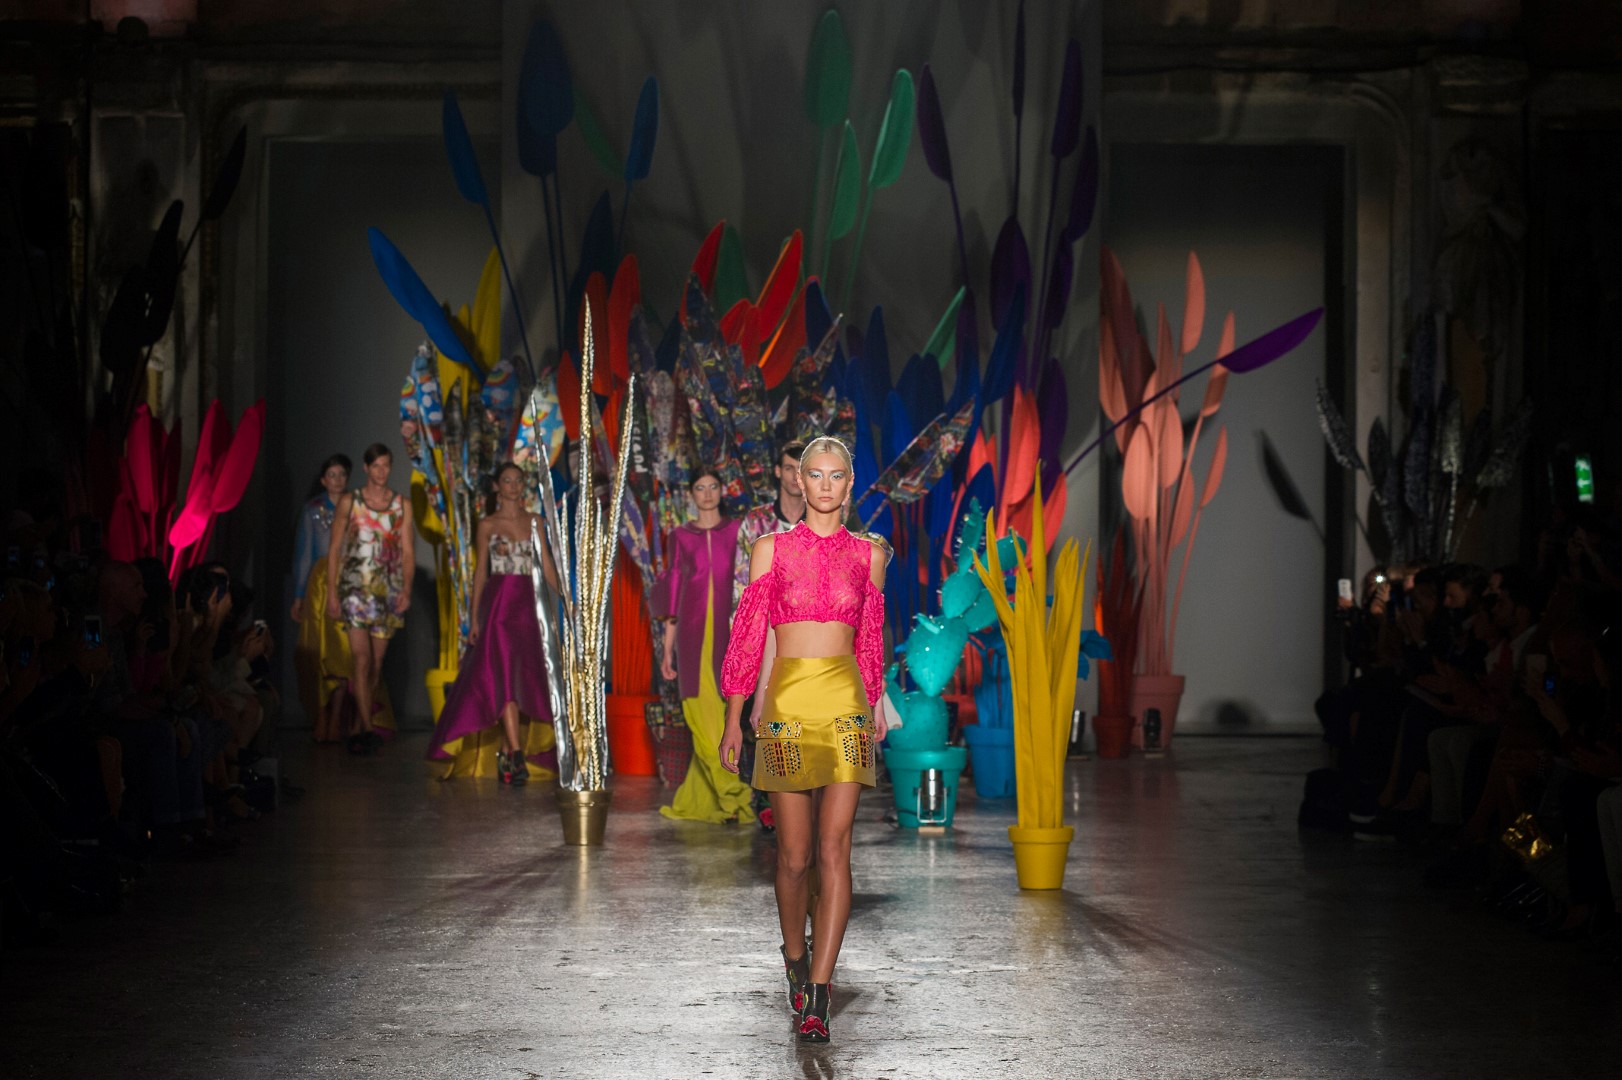 Tendenze moda donna primavera estate 2016: l’Arizona fantastica di Leitmotiv, la sfilata a Milano